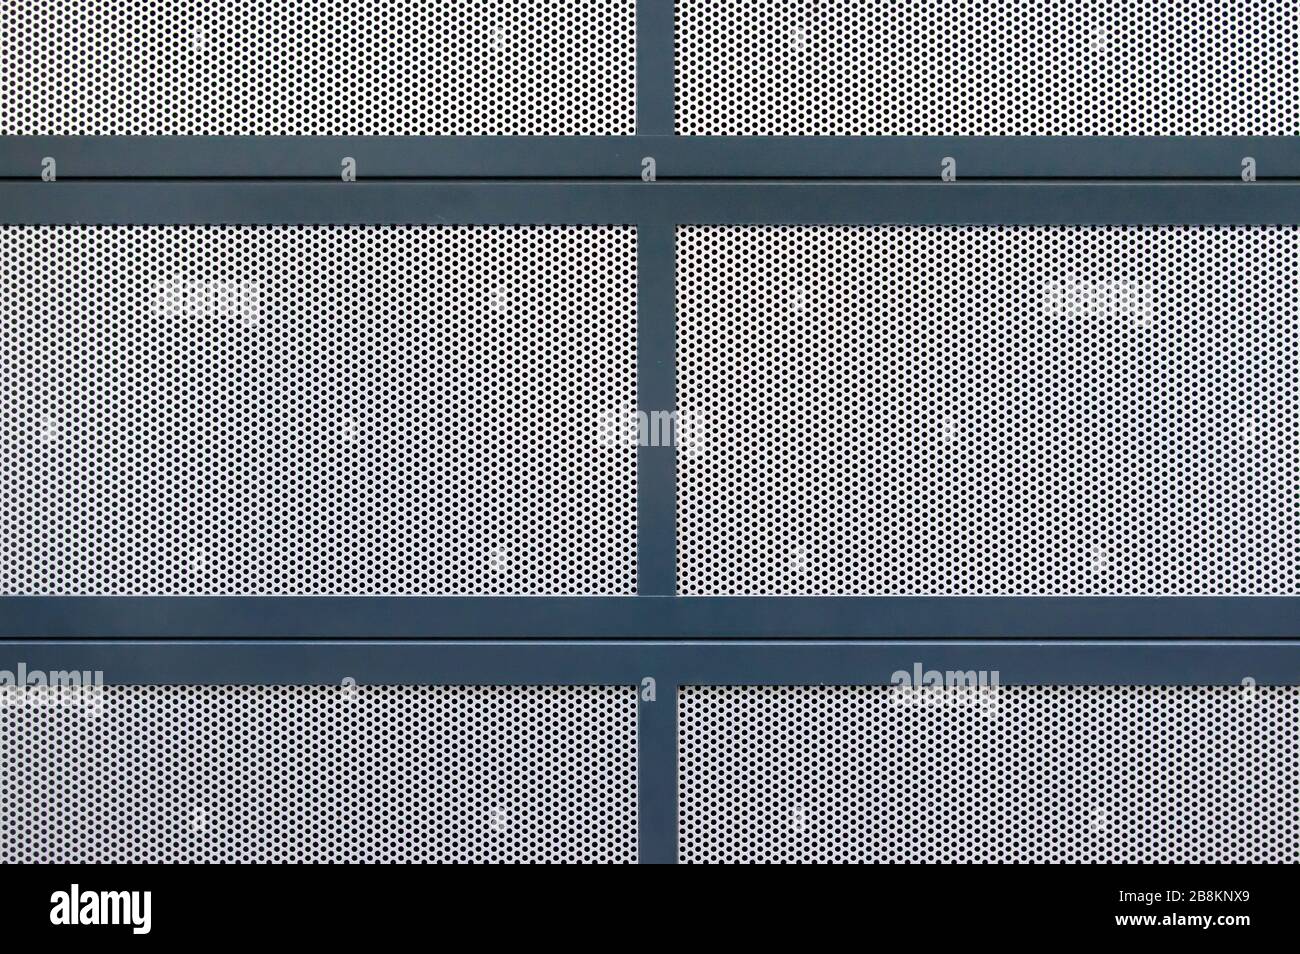 Sezione di un coperchio costituito da più piastre di lamiera forata in argento, bordate con profili metallici verniciati blu Foto Stock